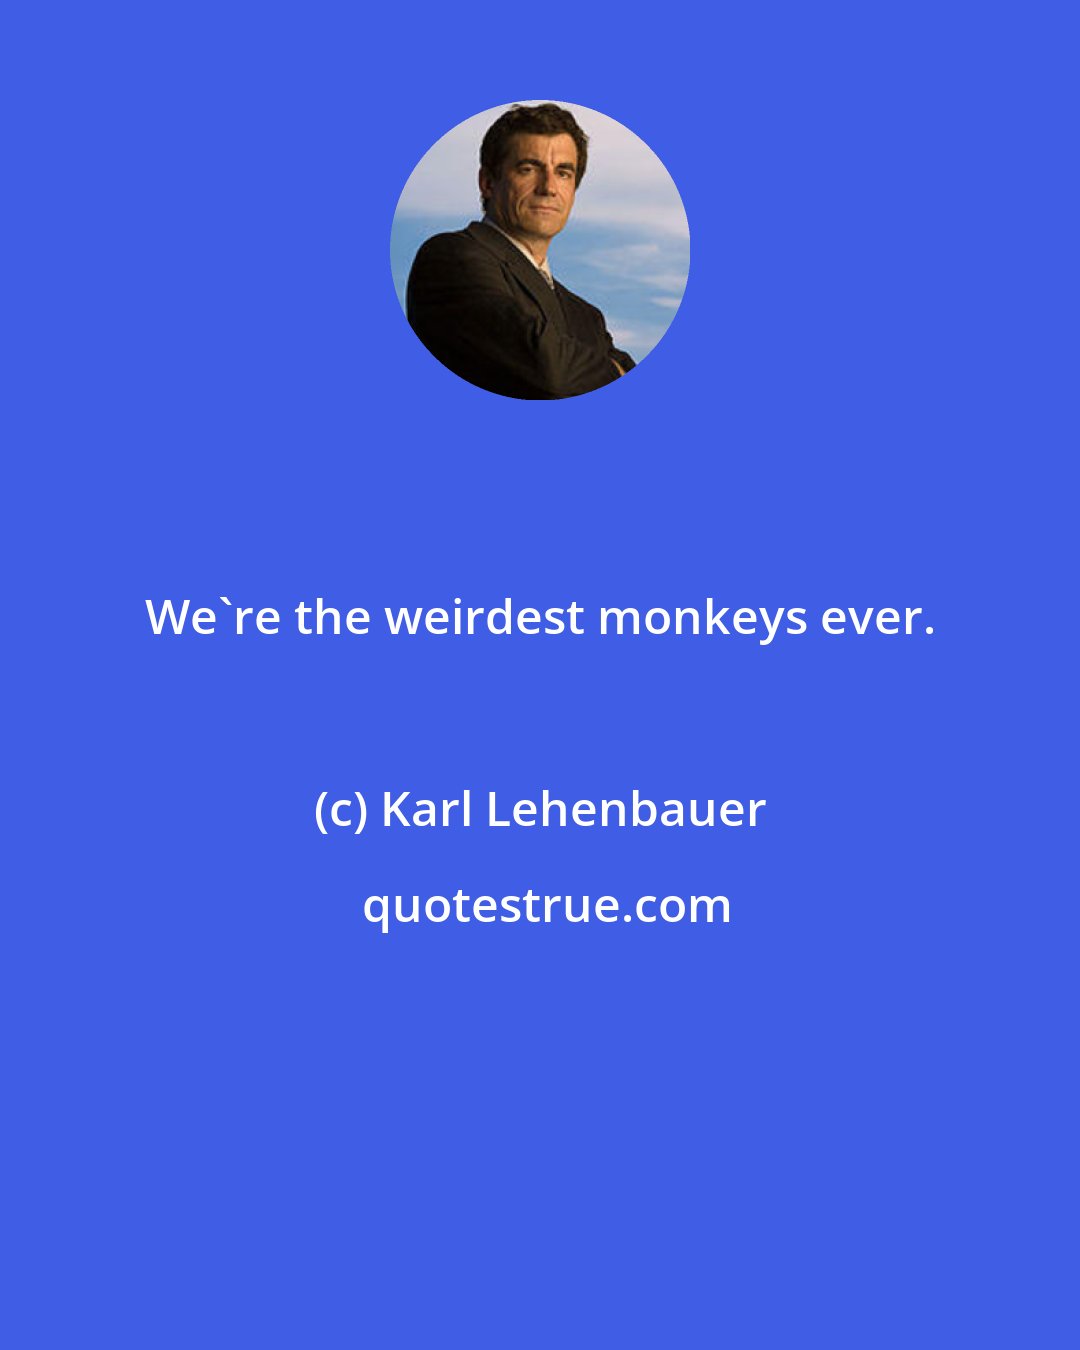 Karl Lehenbauer: We're the weirdest monkeys ever.